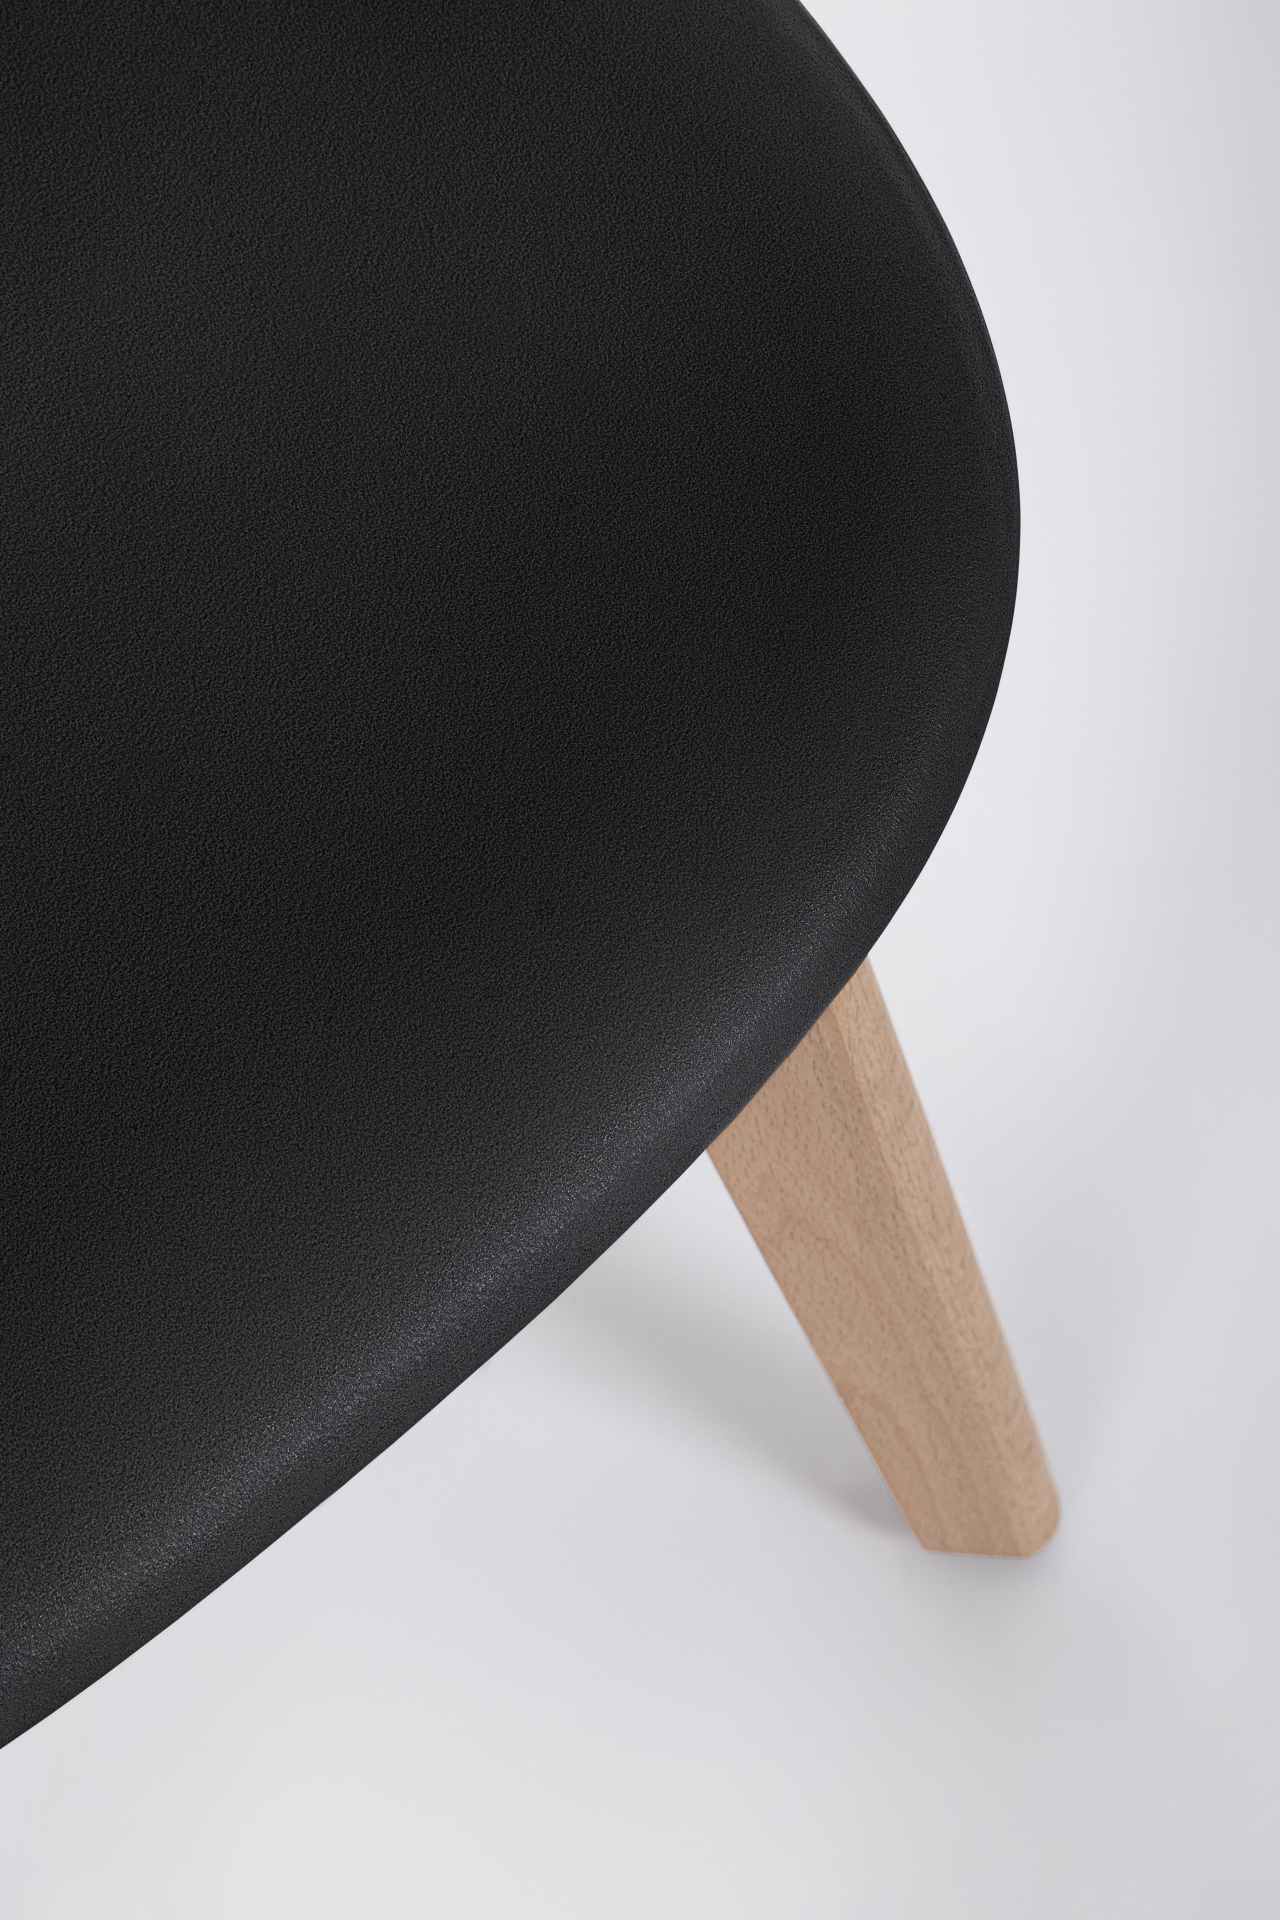 Der Stuhl System überzeugt mit seinem modernem Design. Gefertigt wurde der Stuhl aus Kunststoff, welcher einen schwarzen Farbton besitzt. Das Gestell ist aus Buchenholz. Die Sitzhöhe des Stuhls ist 46 cm